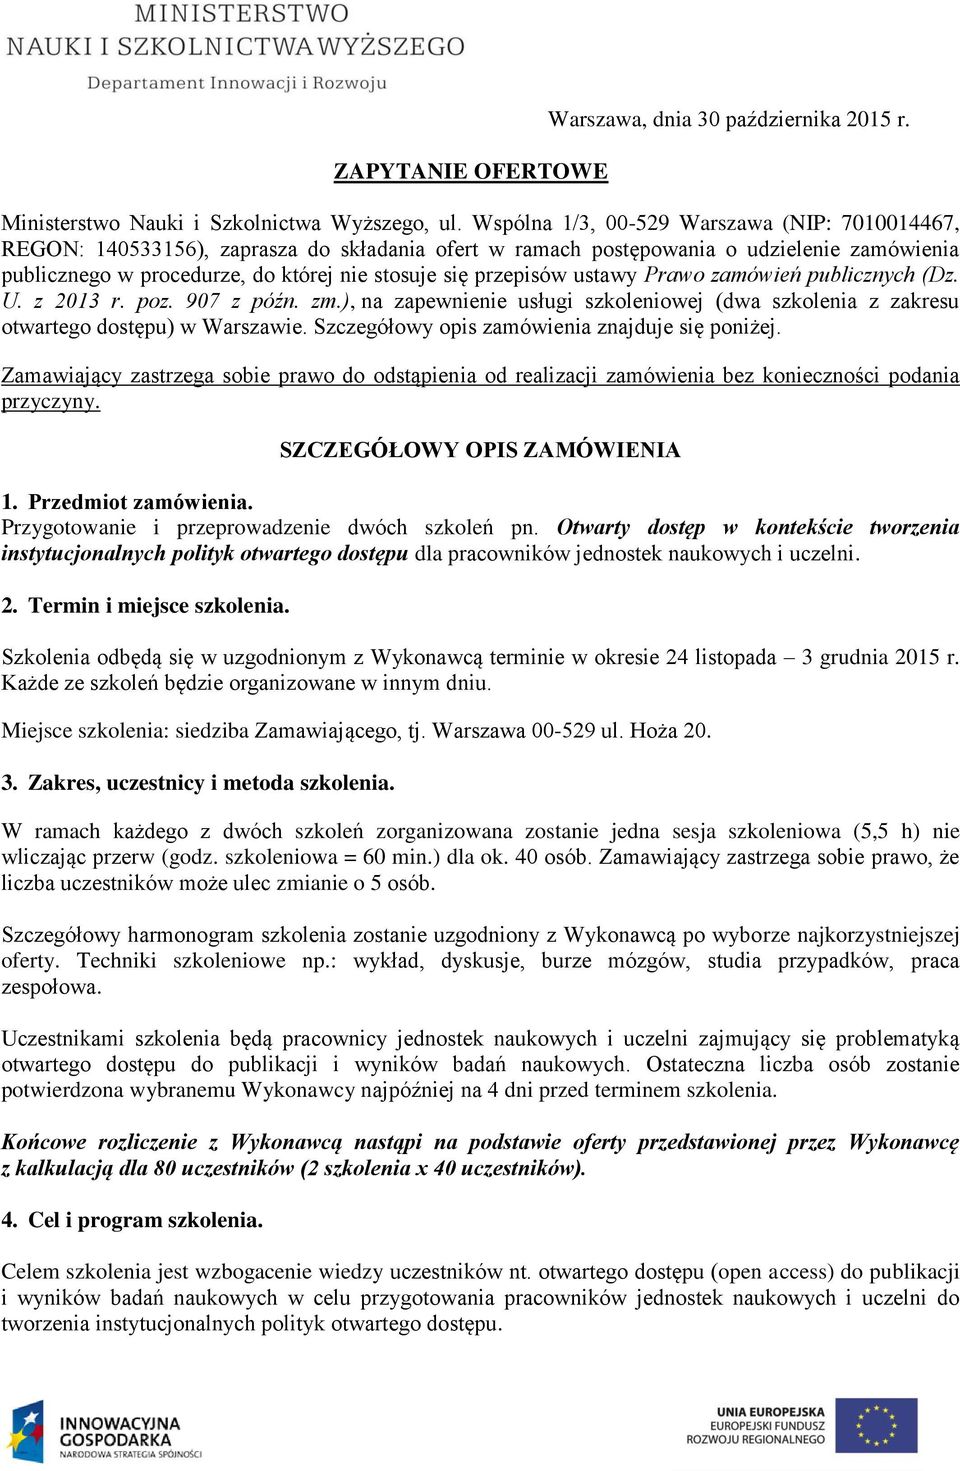 przepisów ustawy Prawo zamówień publicznych (Dz. U. z 2013 r. poz. 907 z późn. zm.), na zapewnienie usługi szkoleniowej (dwa szkolenia z zakresu otwartego dostępu) w Warszawie.